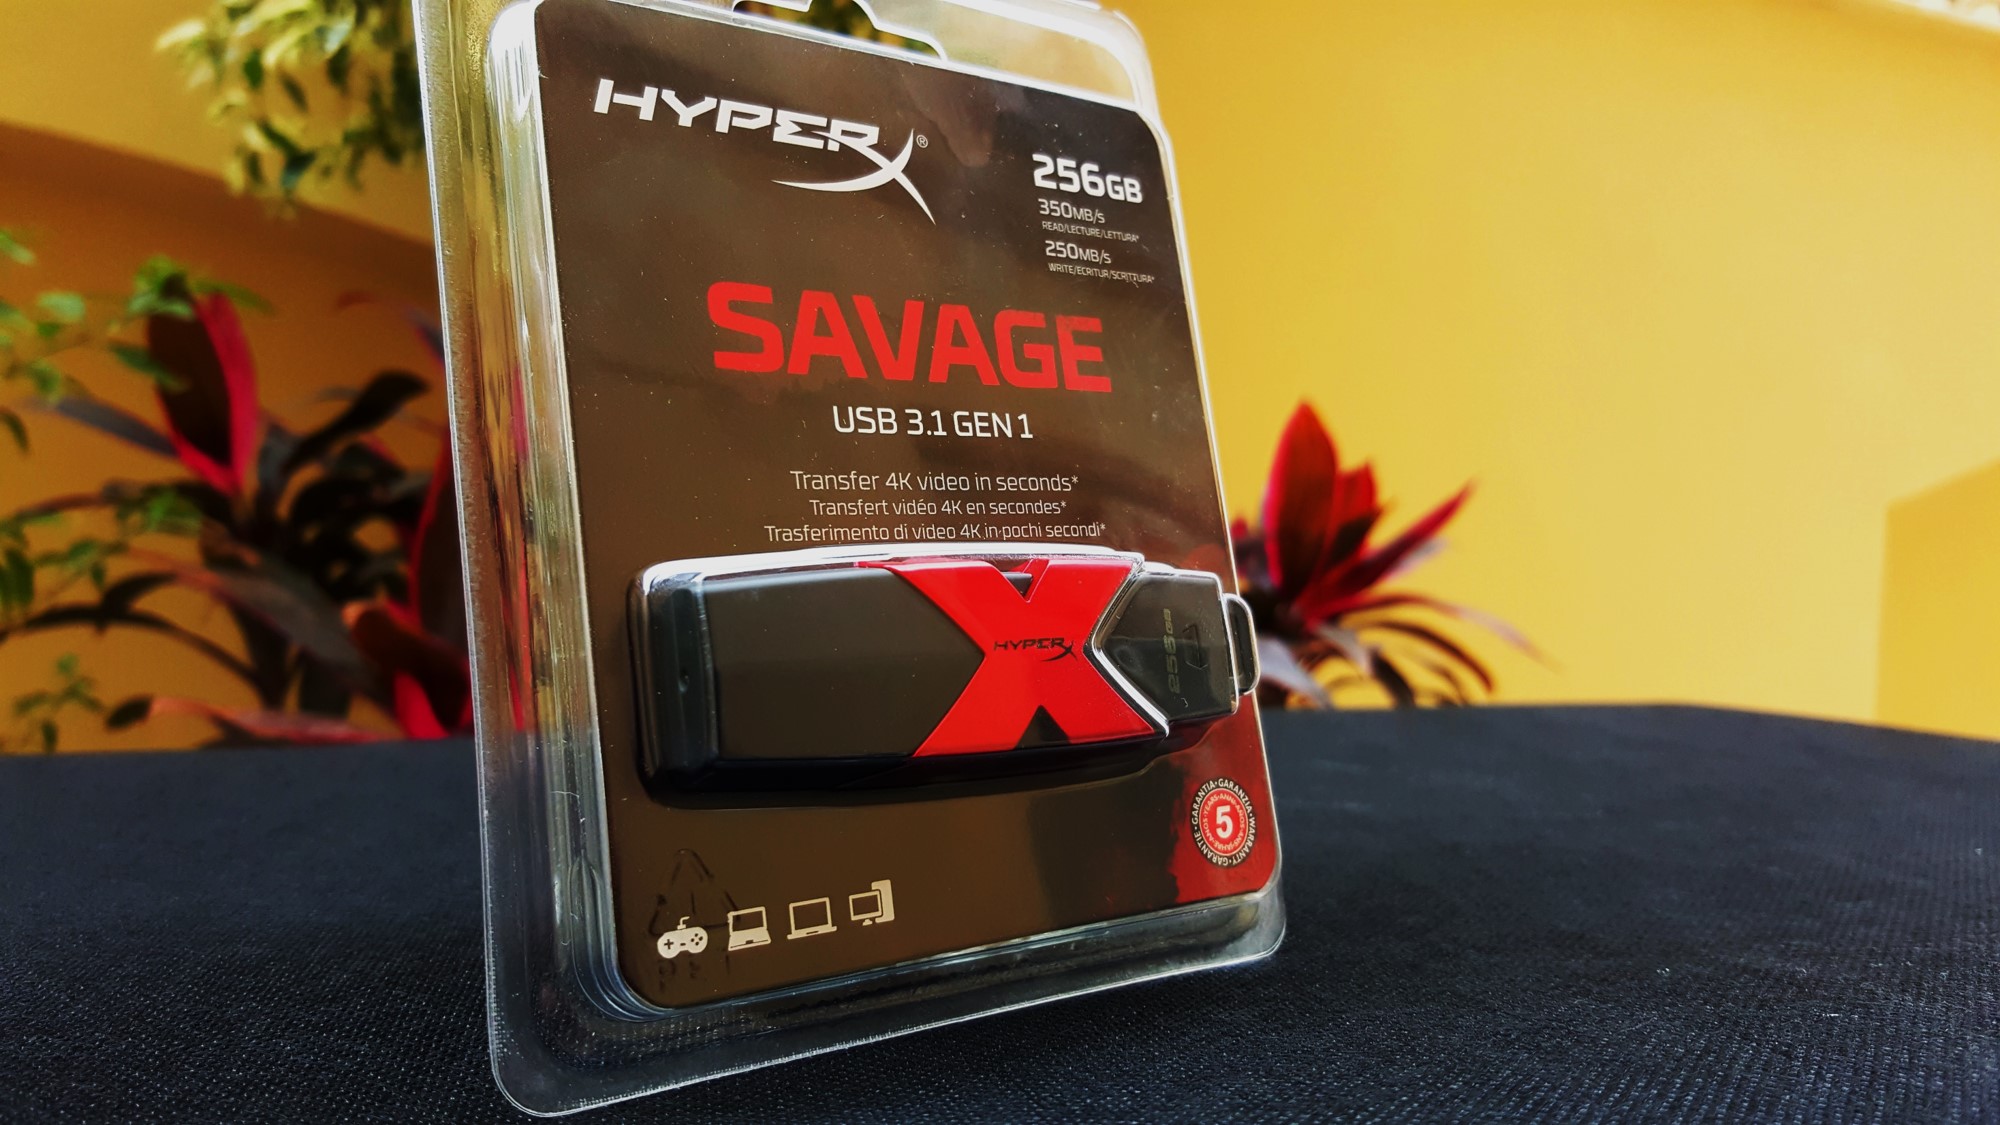 2-Kingston HyperX Savage USB 3.1 Gen 1 Box side